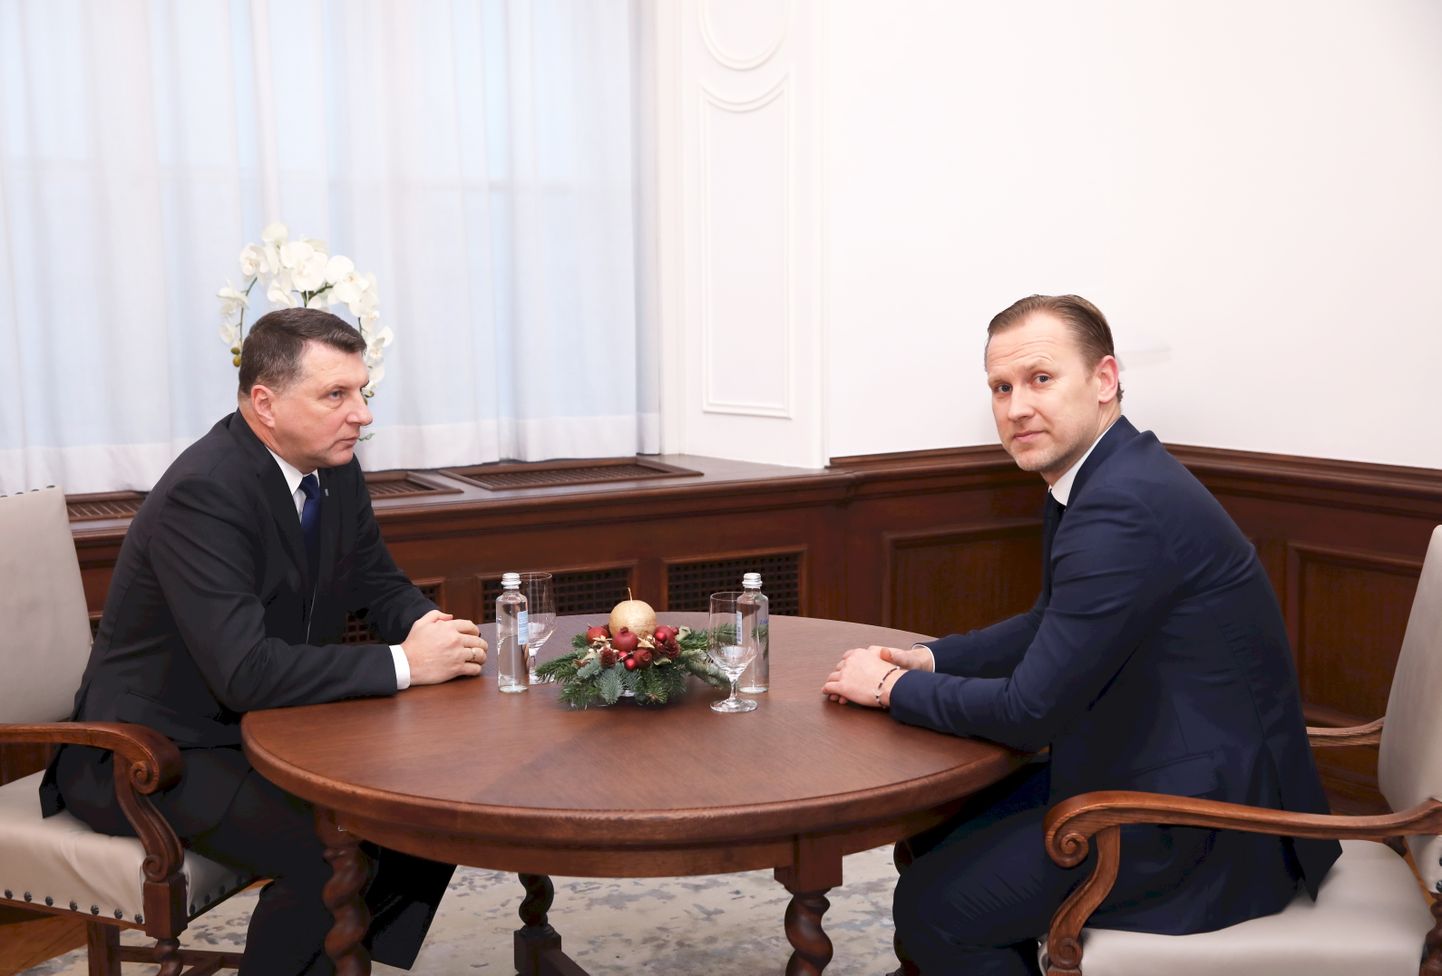 Valsts prezidents Raimonds Vējonis (no kreisās) un Ministru prezidenta amata kandidāts Aldis Gobzems tikšanās laikā Rīgas pilī.